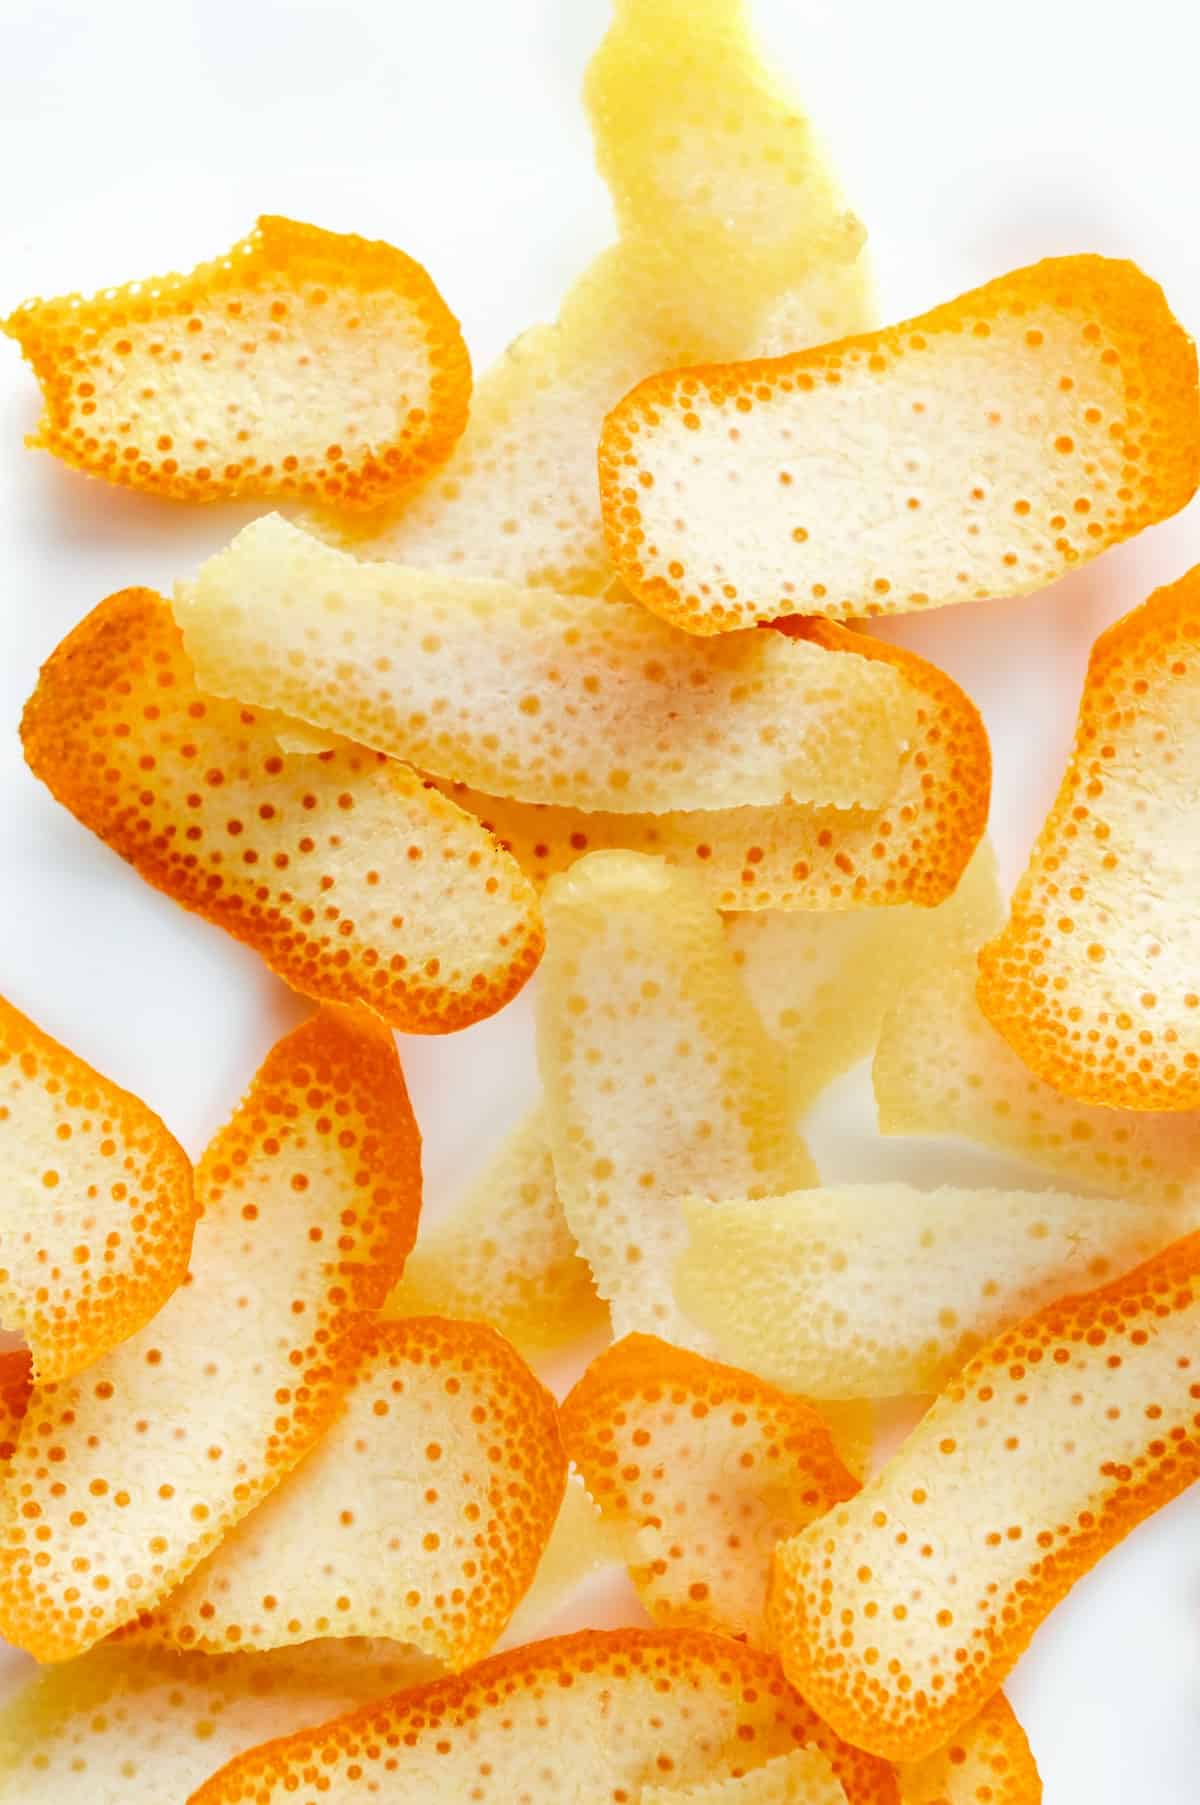 orange and lemon peels on a white surface. photo credit okeykat.